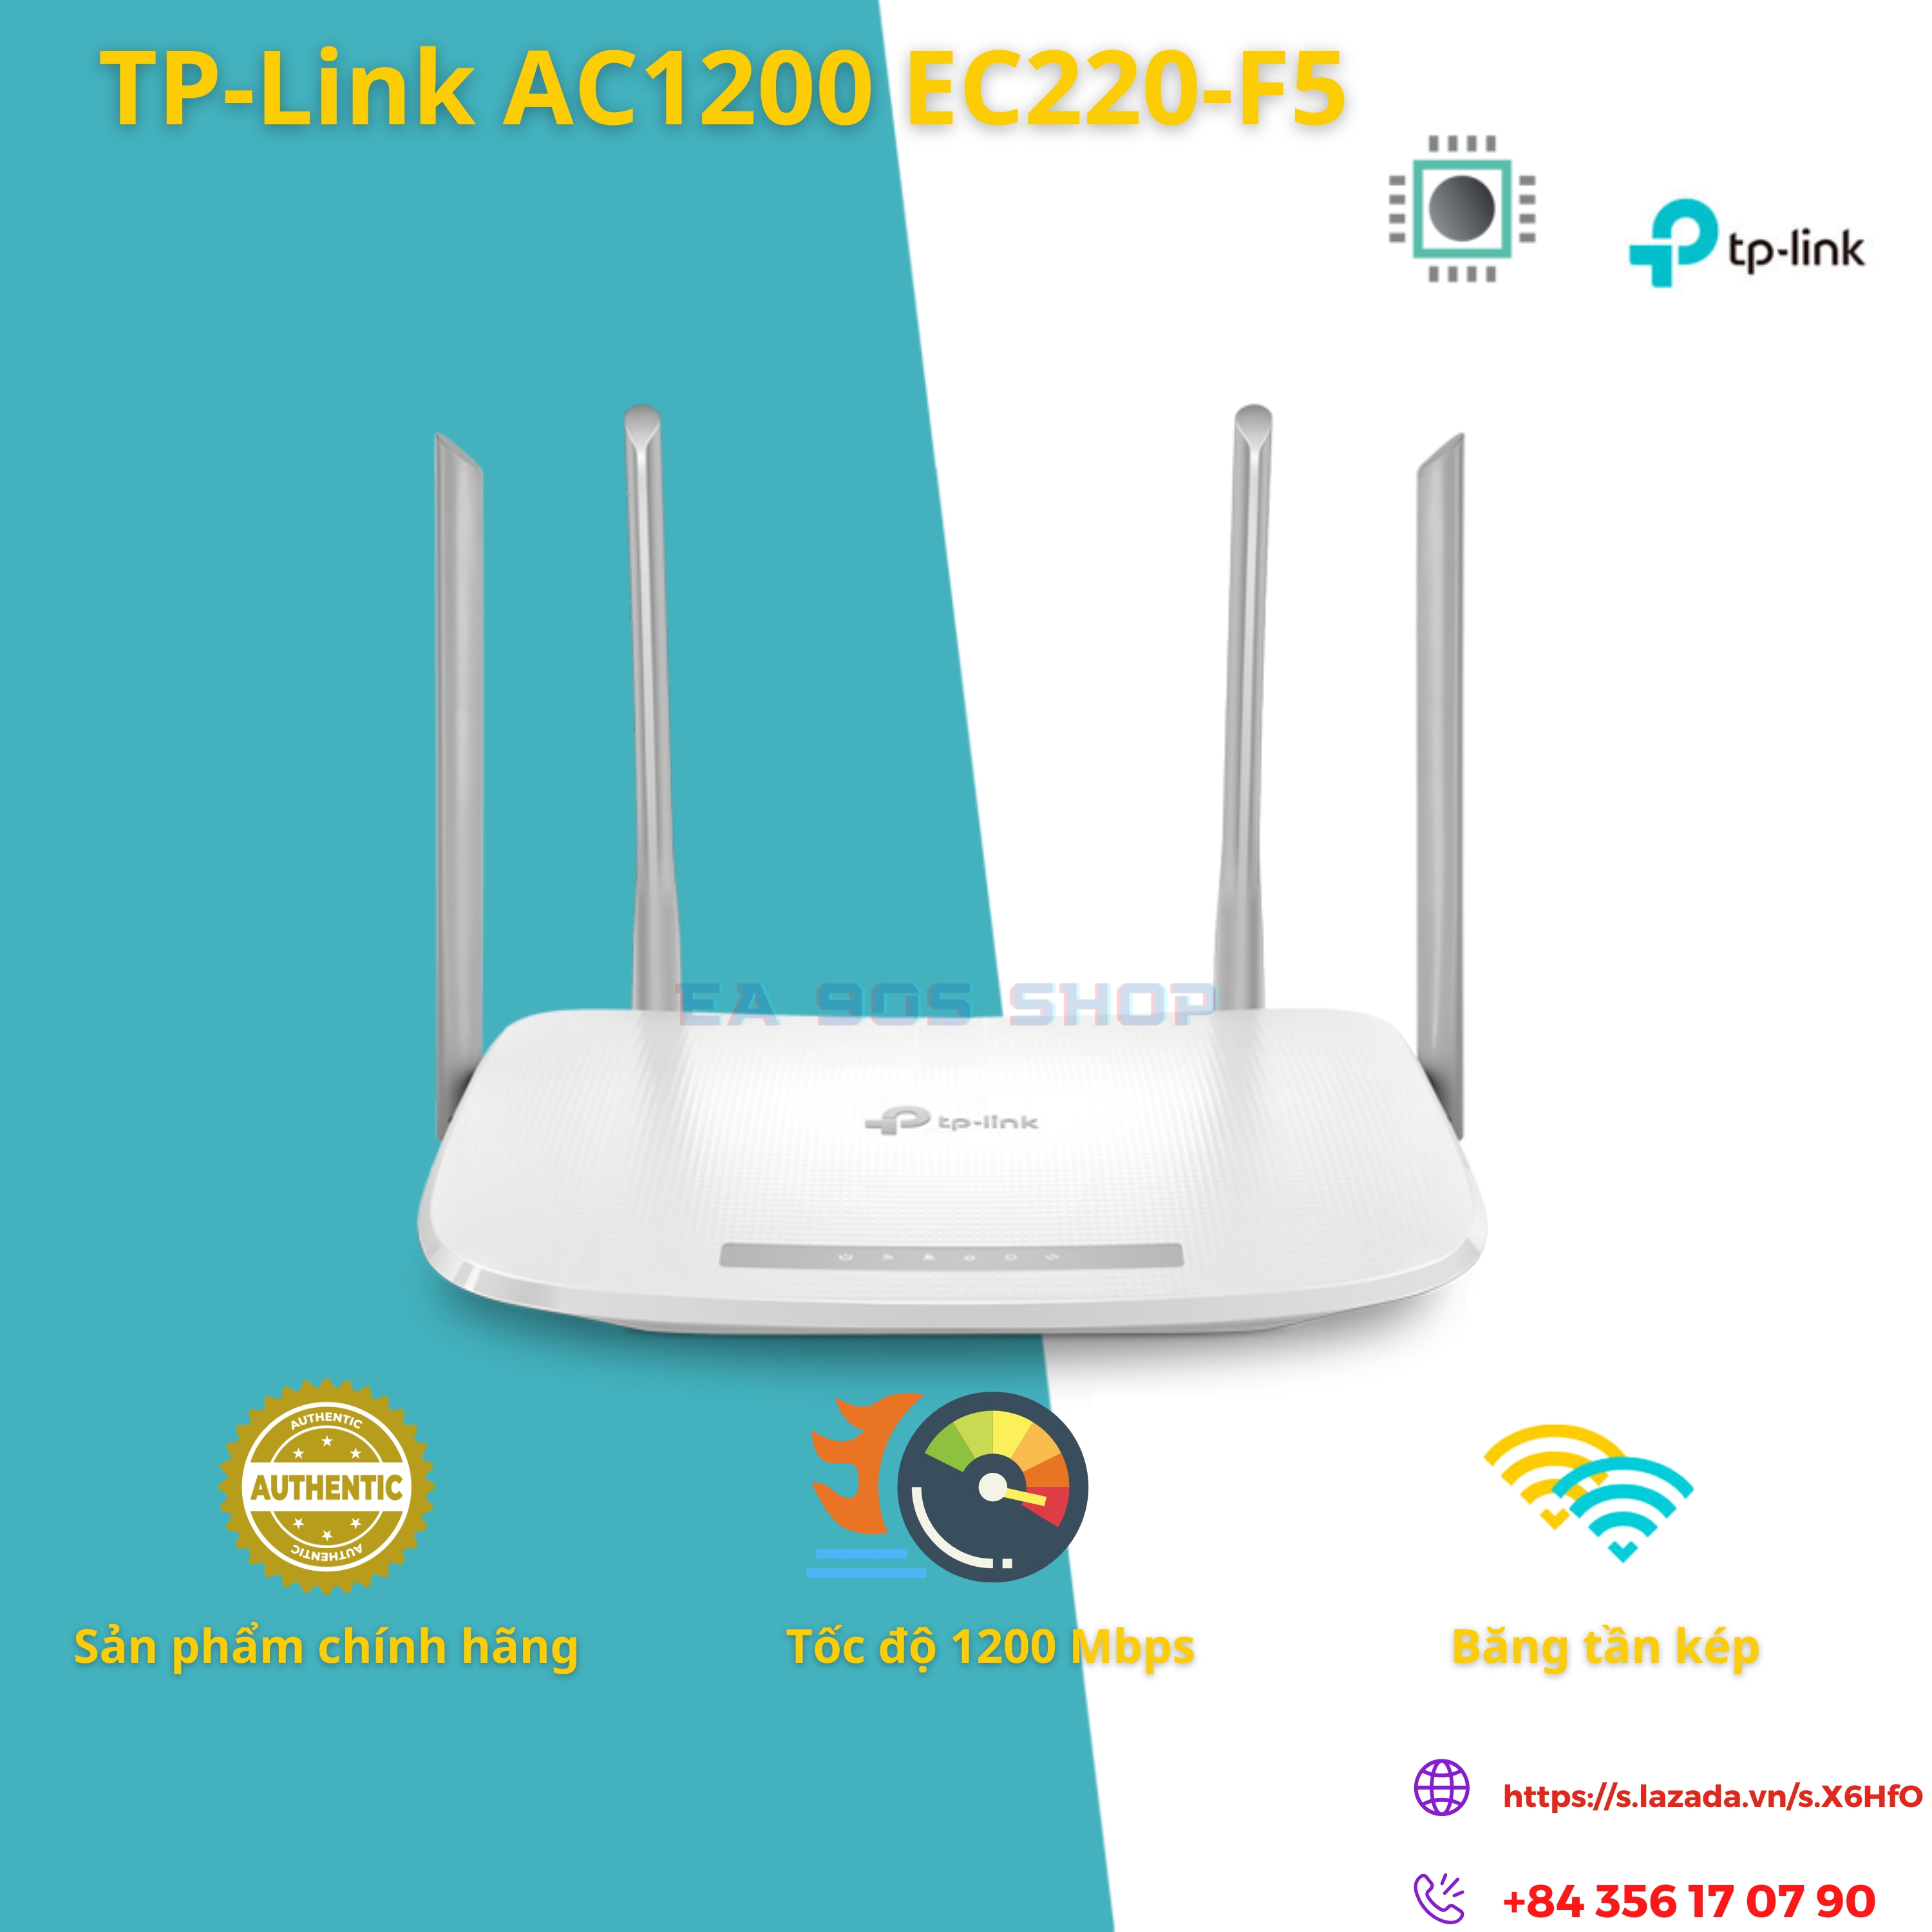 Bộ phát Wi-Fi TP-LINK EC220-F5 chính hãng, Archer C50 AC1200  Router Băng tần kép, Dual-Band Wi-Fi Router, tốc độ cao 1200Mbps - EA 90S Shop